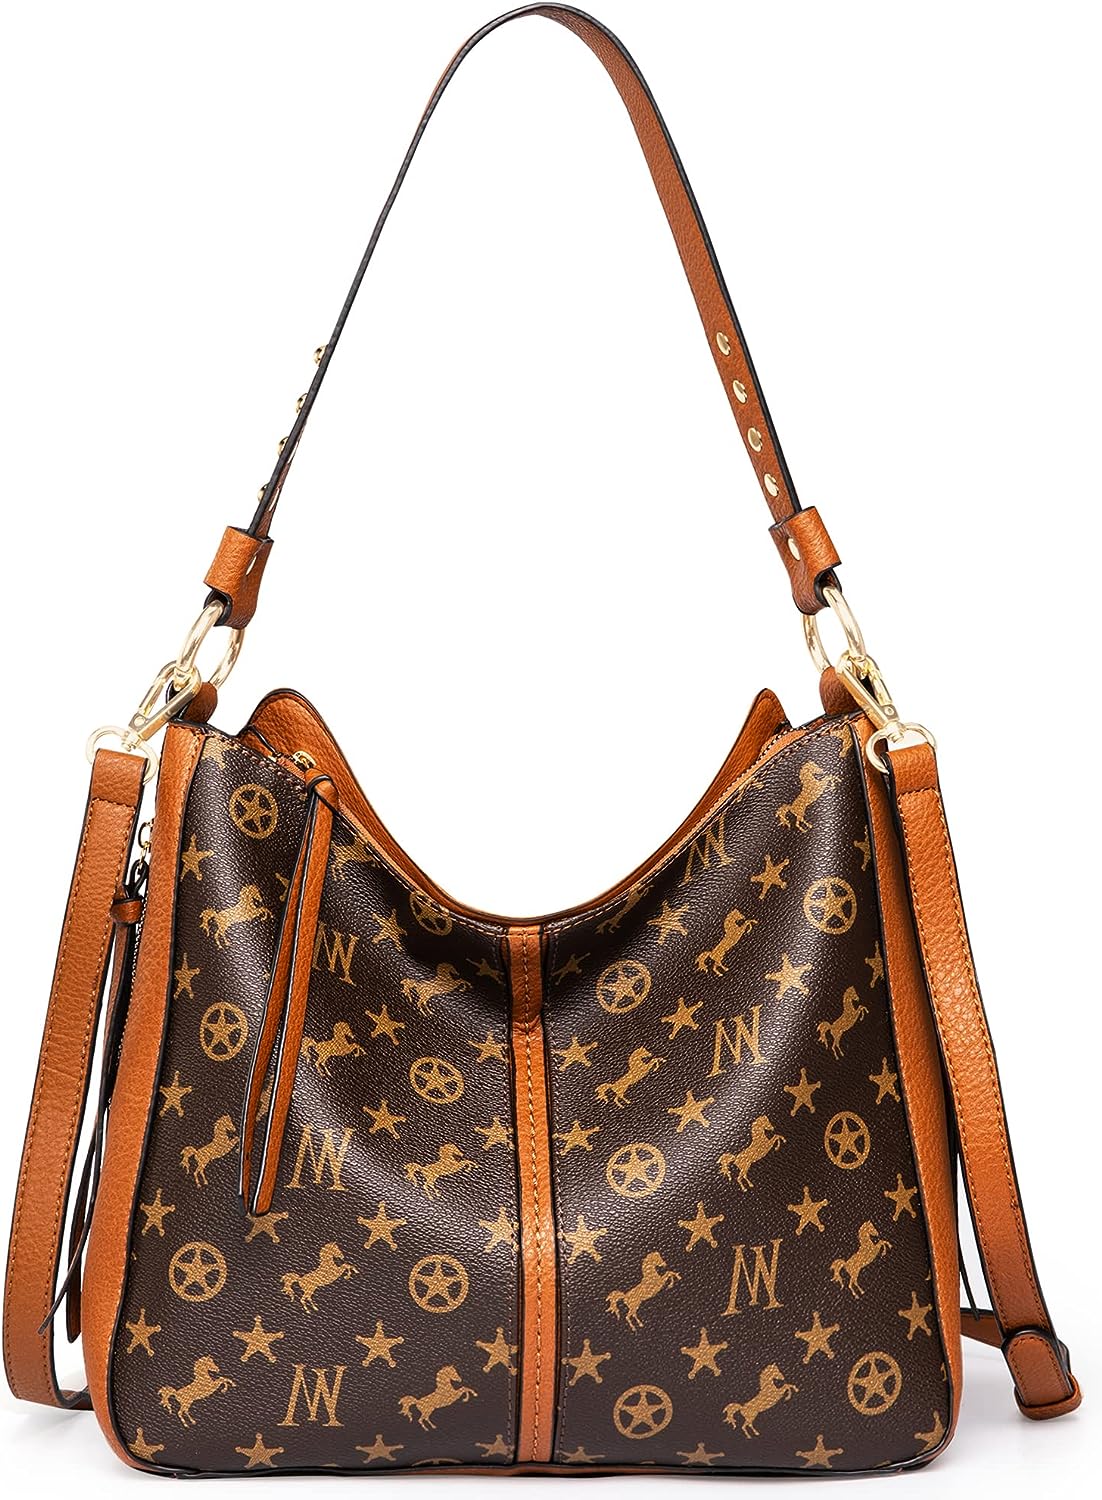 Louis Vuitton Women's Pre-Loved Neverfull Mm Damier Ebene Bag